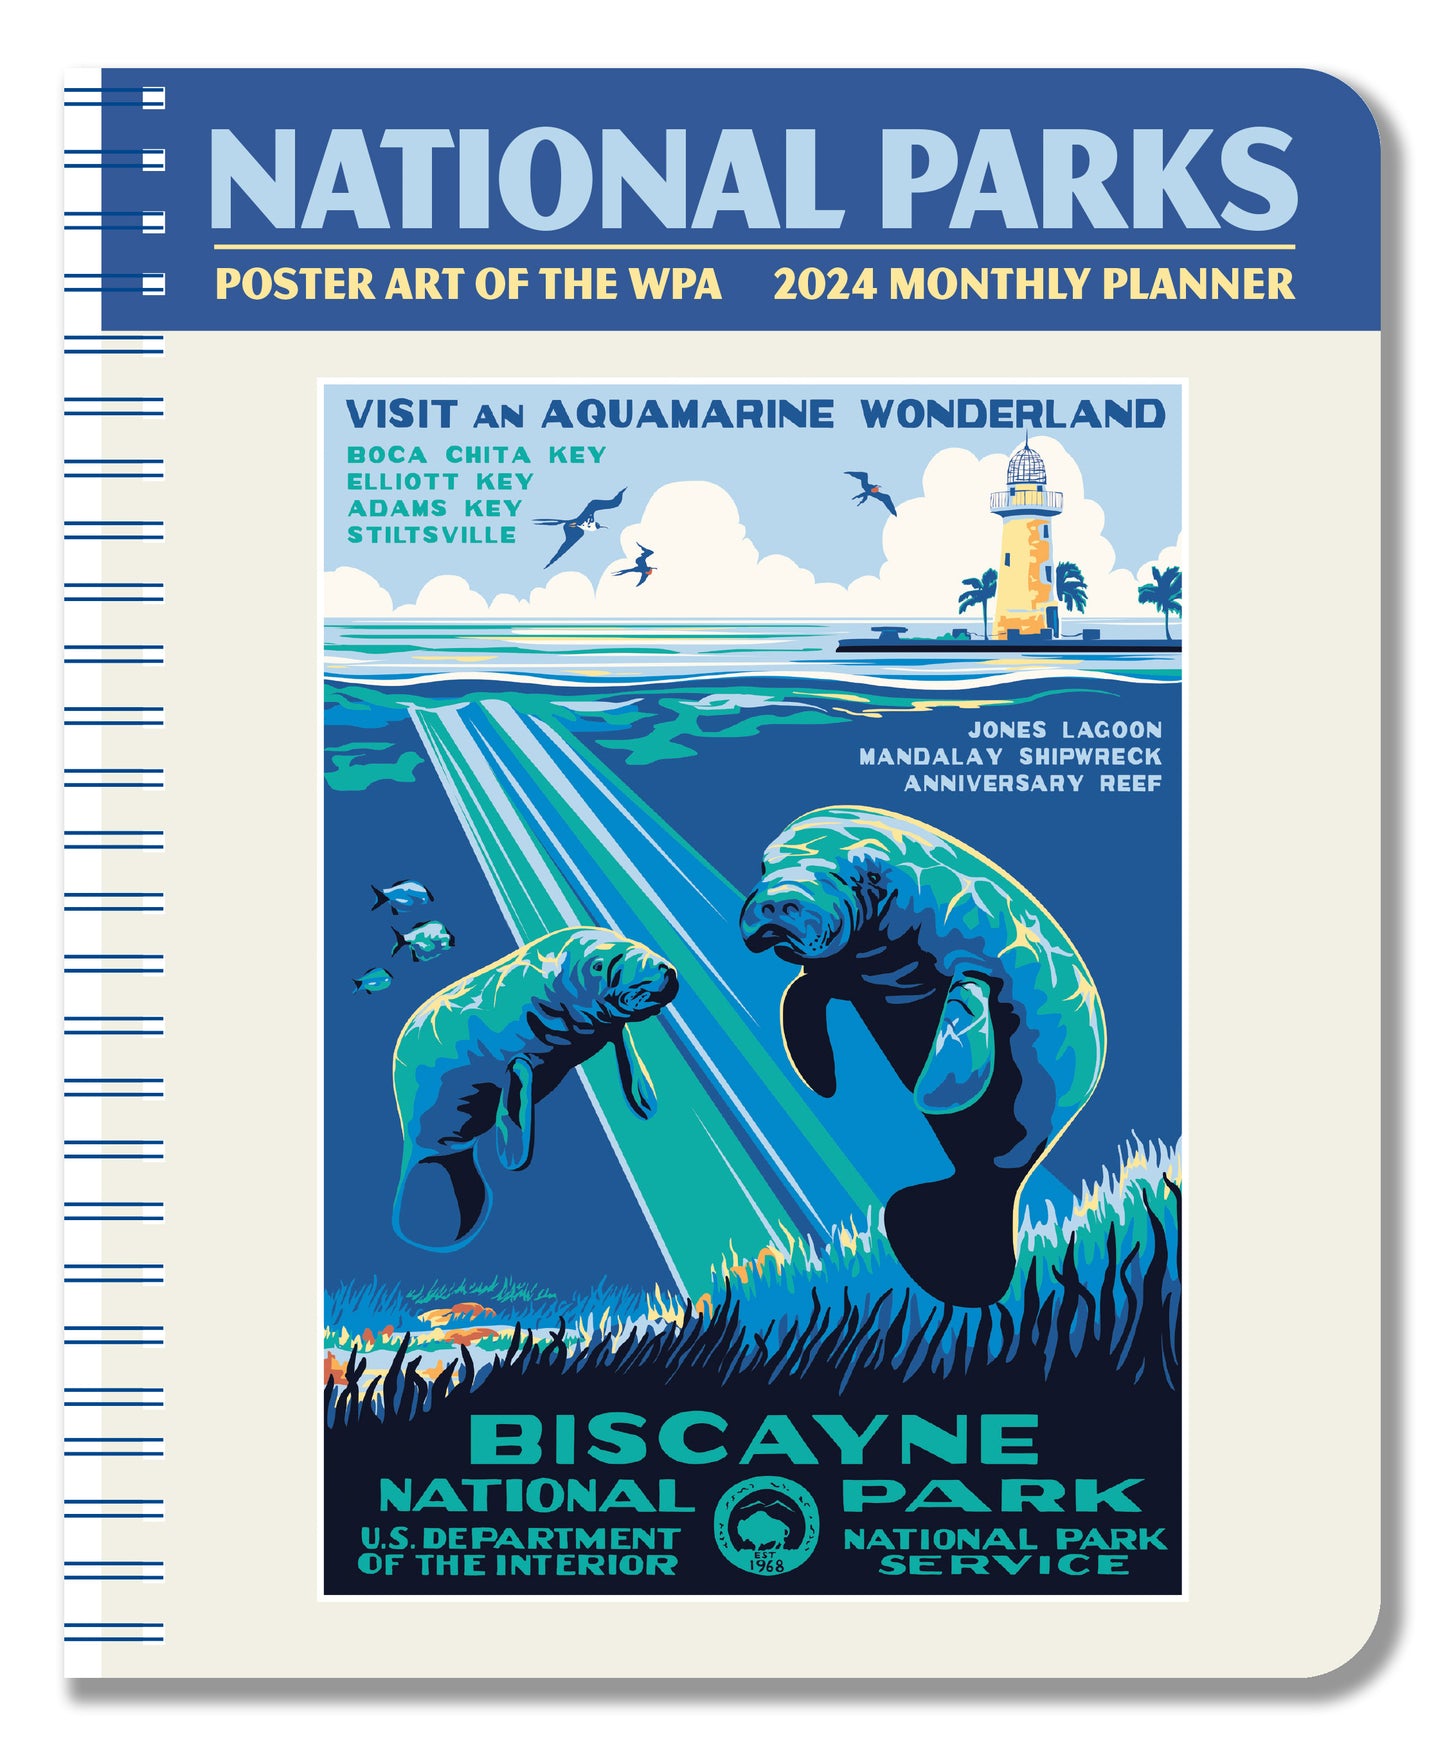 National Parks 2024 Planner